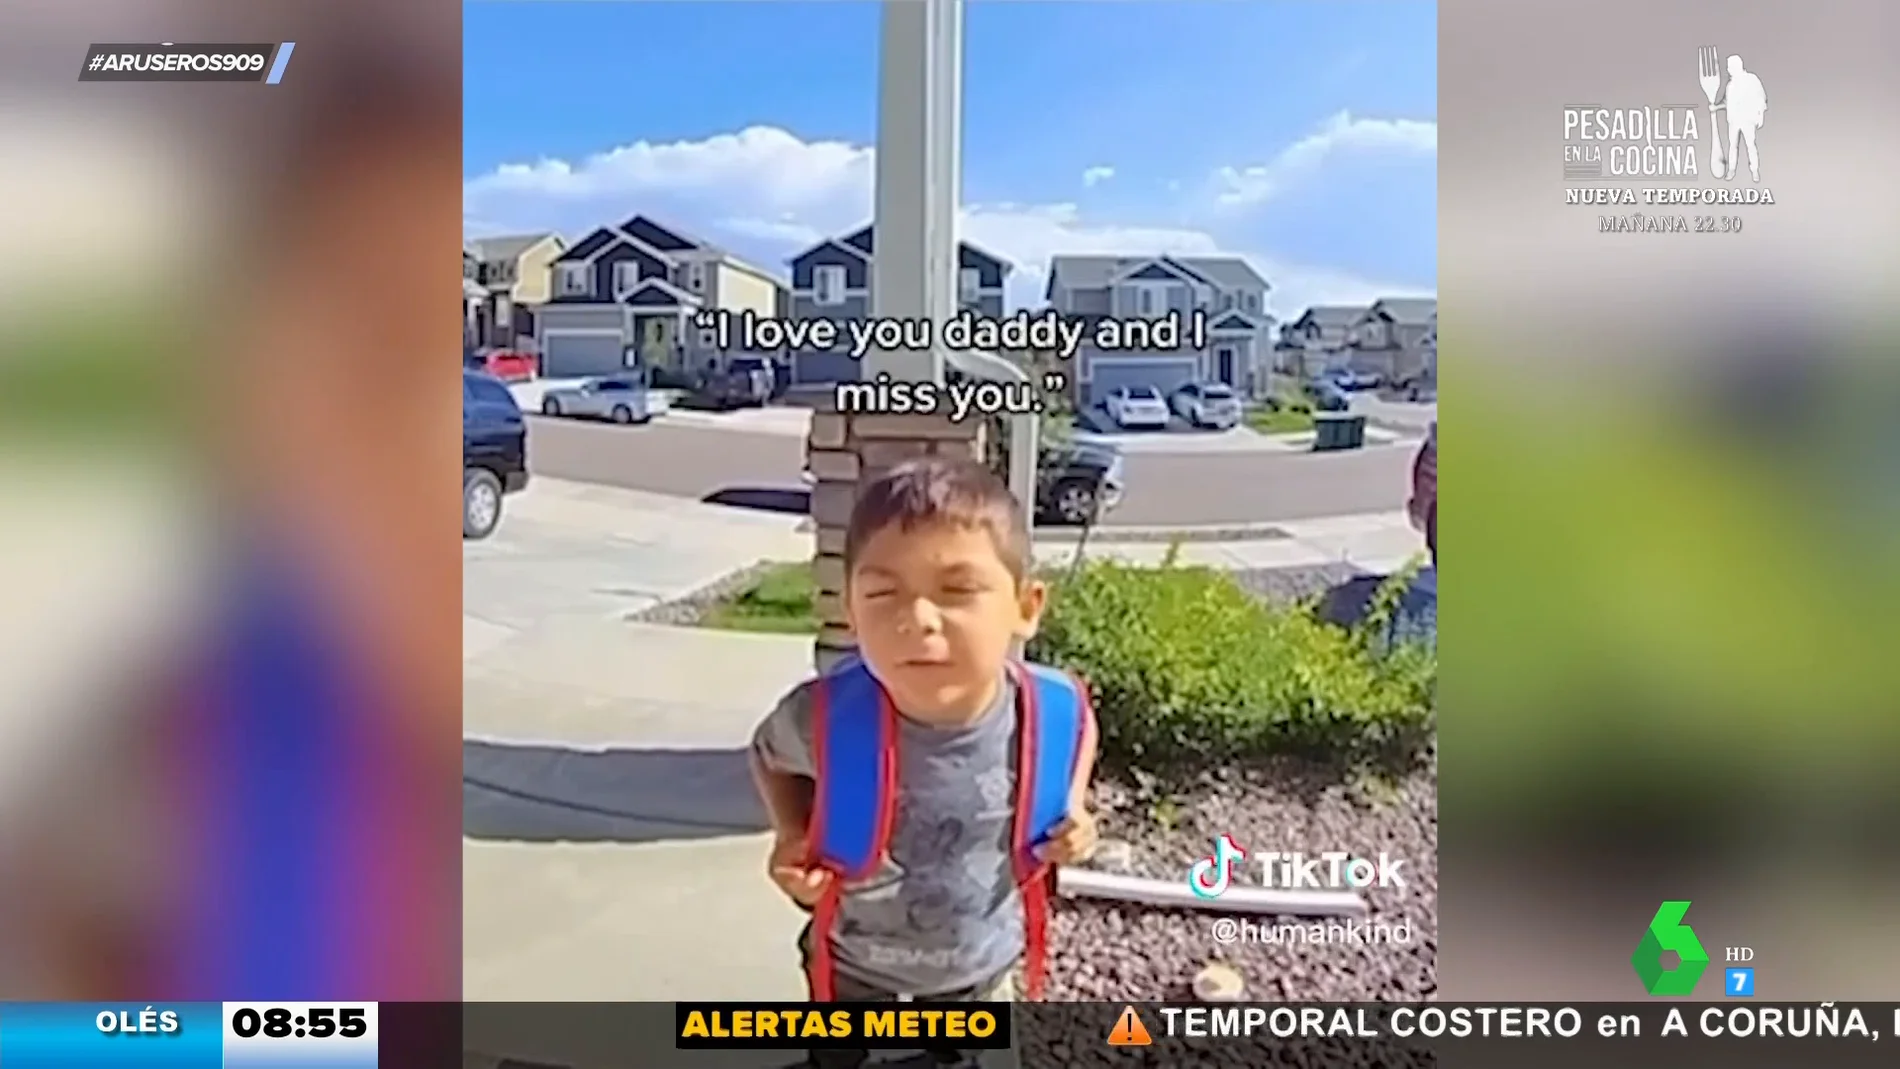 La tierna técnica de este niño para comunicarse con su padre cuando tiene que ausentarse de casa